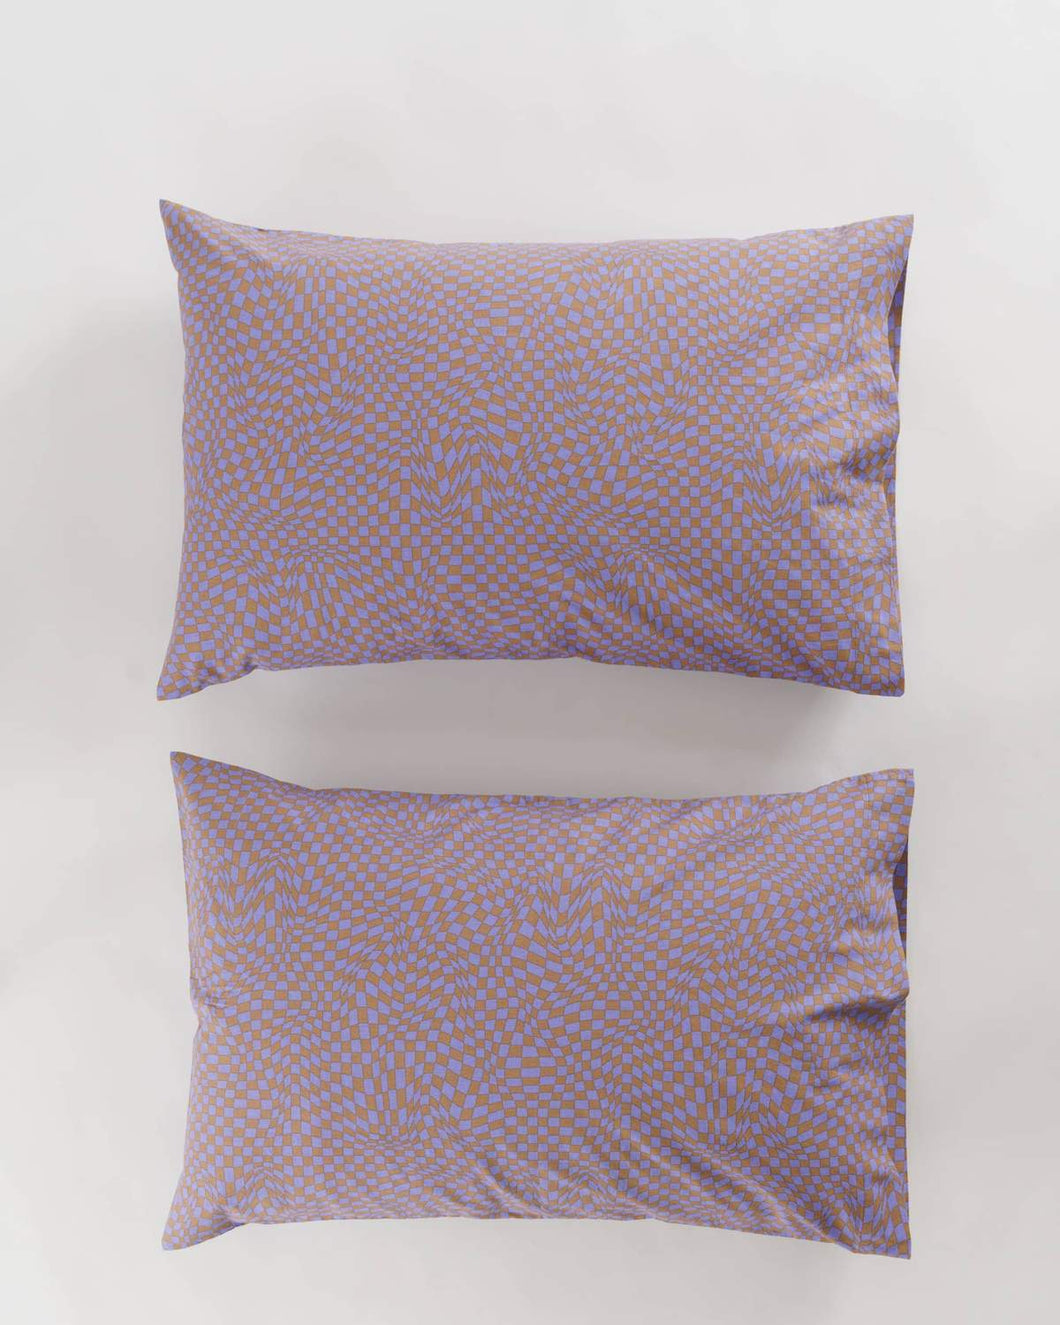 BAGGU Pillowcase Set of 2- Lavender Trippy Checker